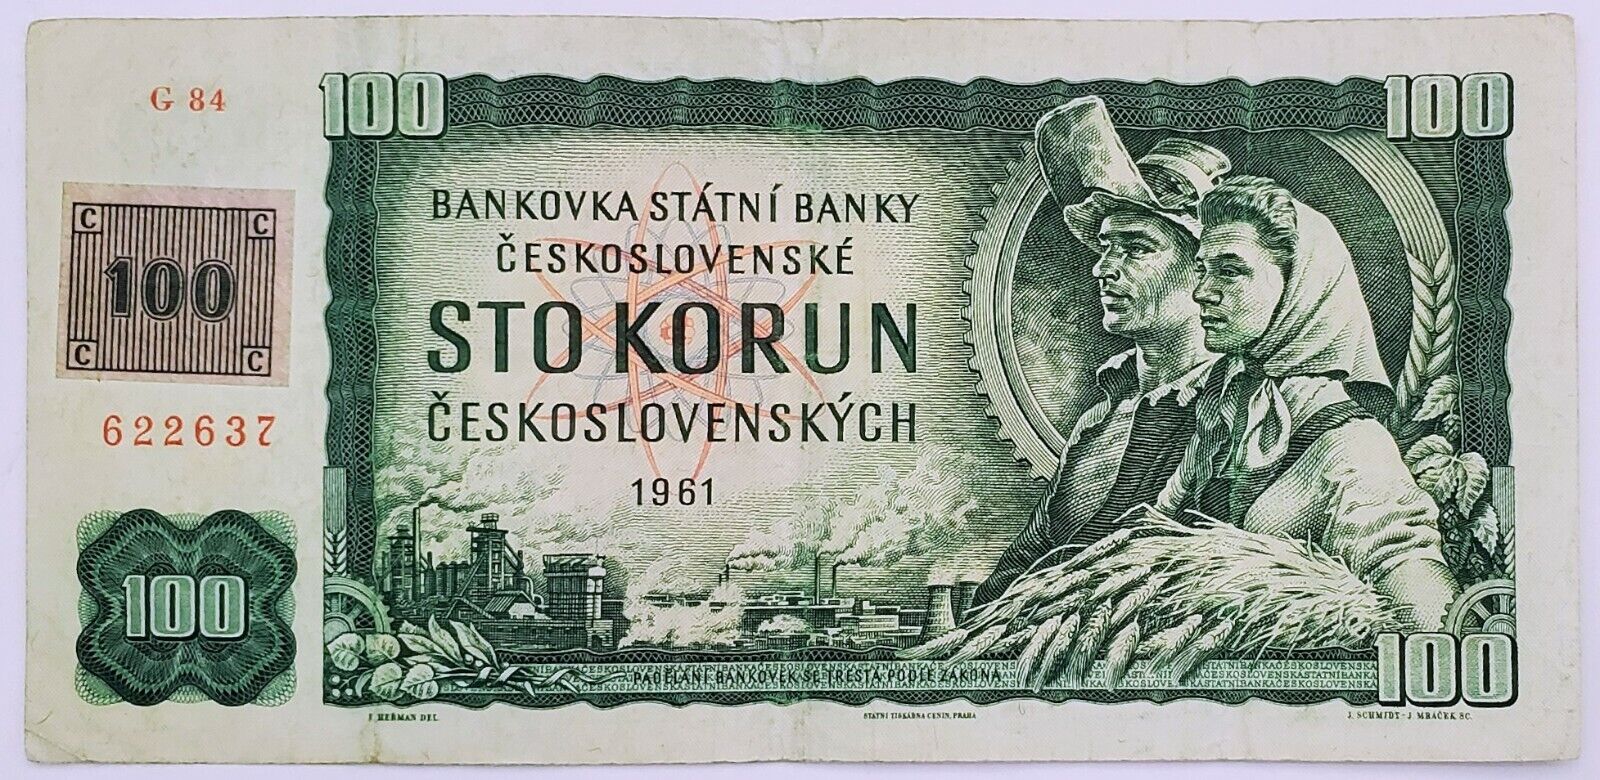 Czechoslovakia 500 Korun 1961 Banknote With Czech Stamp Prefix G84 622637 Rare!